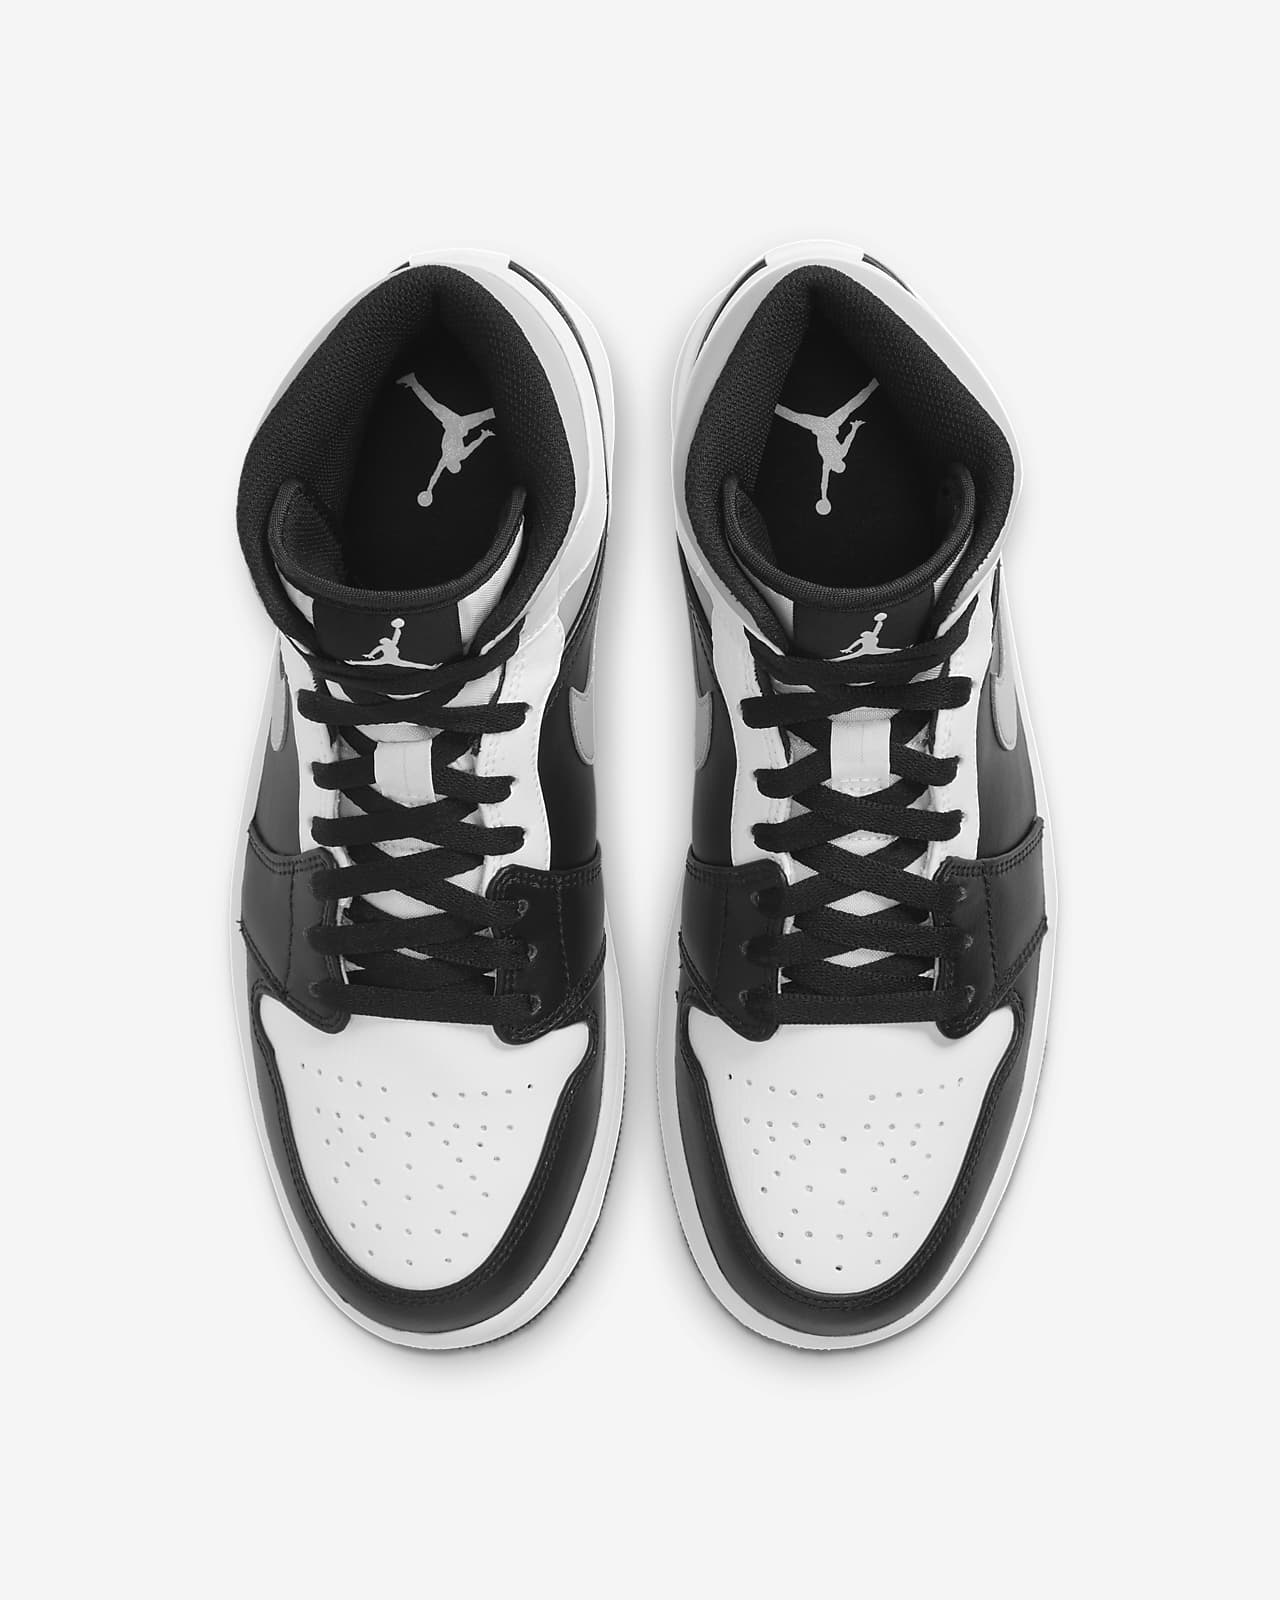 air jordan shoes black